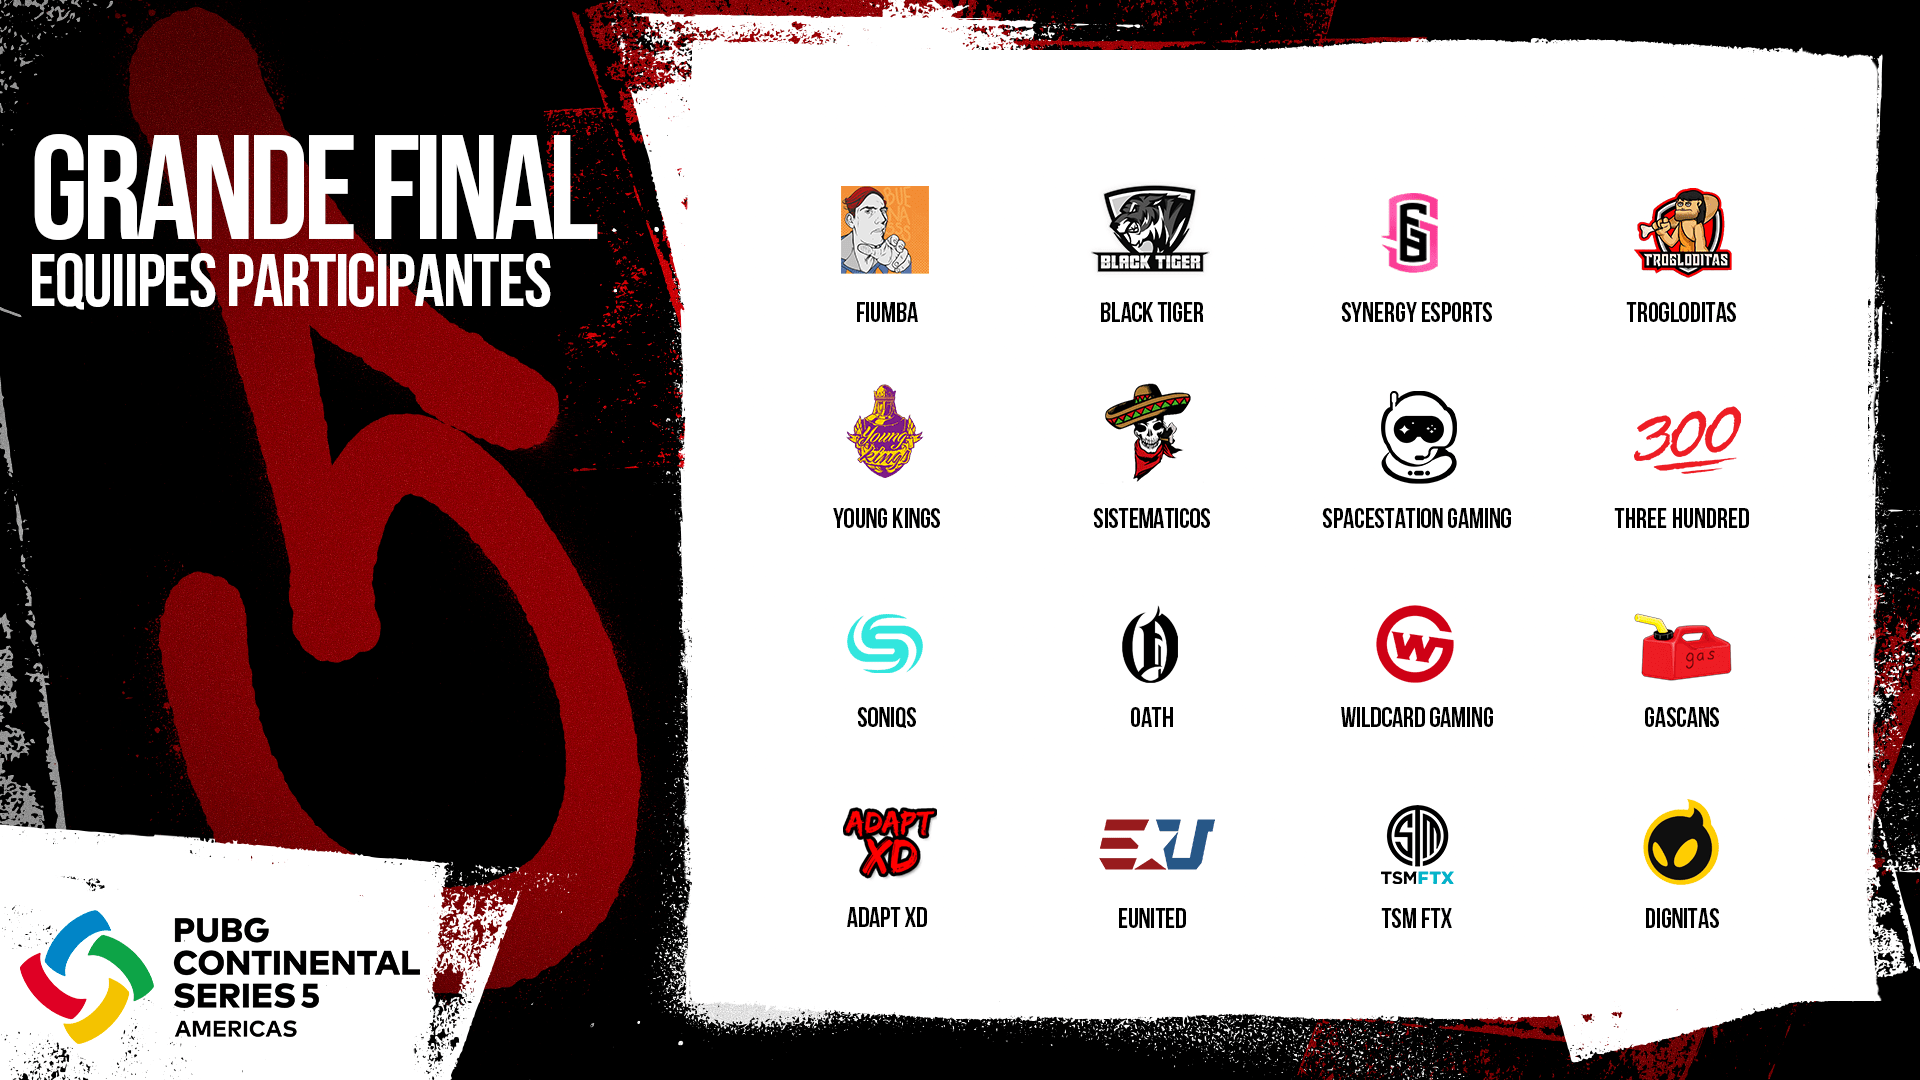 Lista das 16 equipes participantes, com nomes e logotipos, da Grande Final da PCS5 Américas